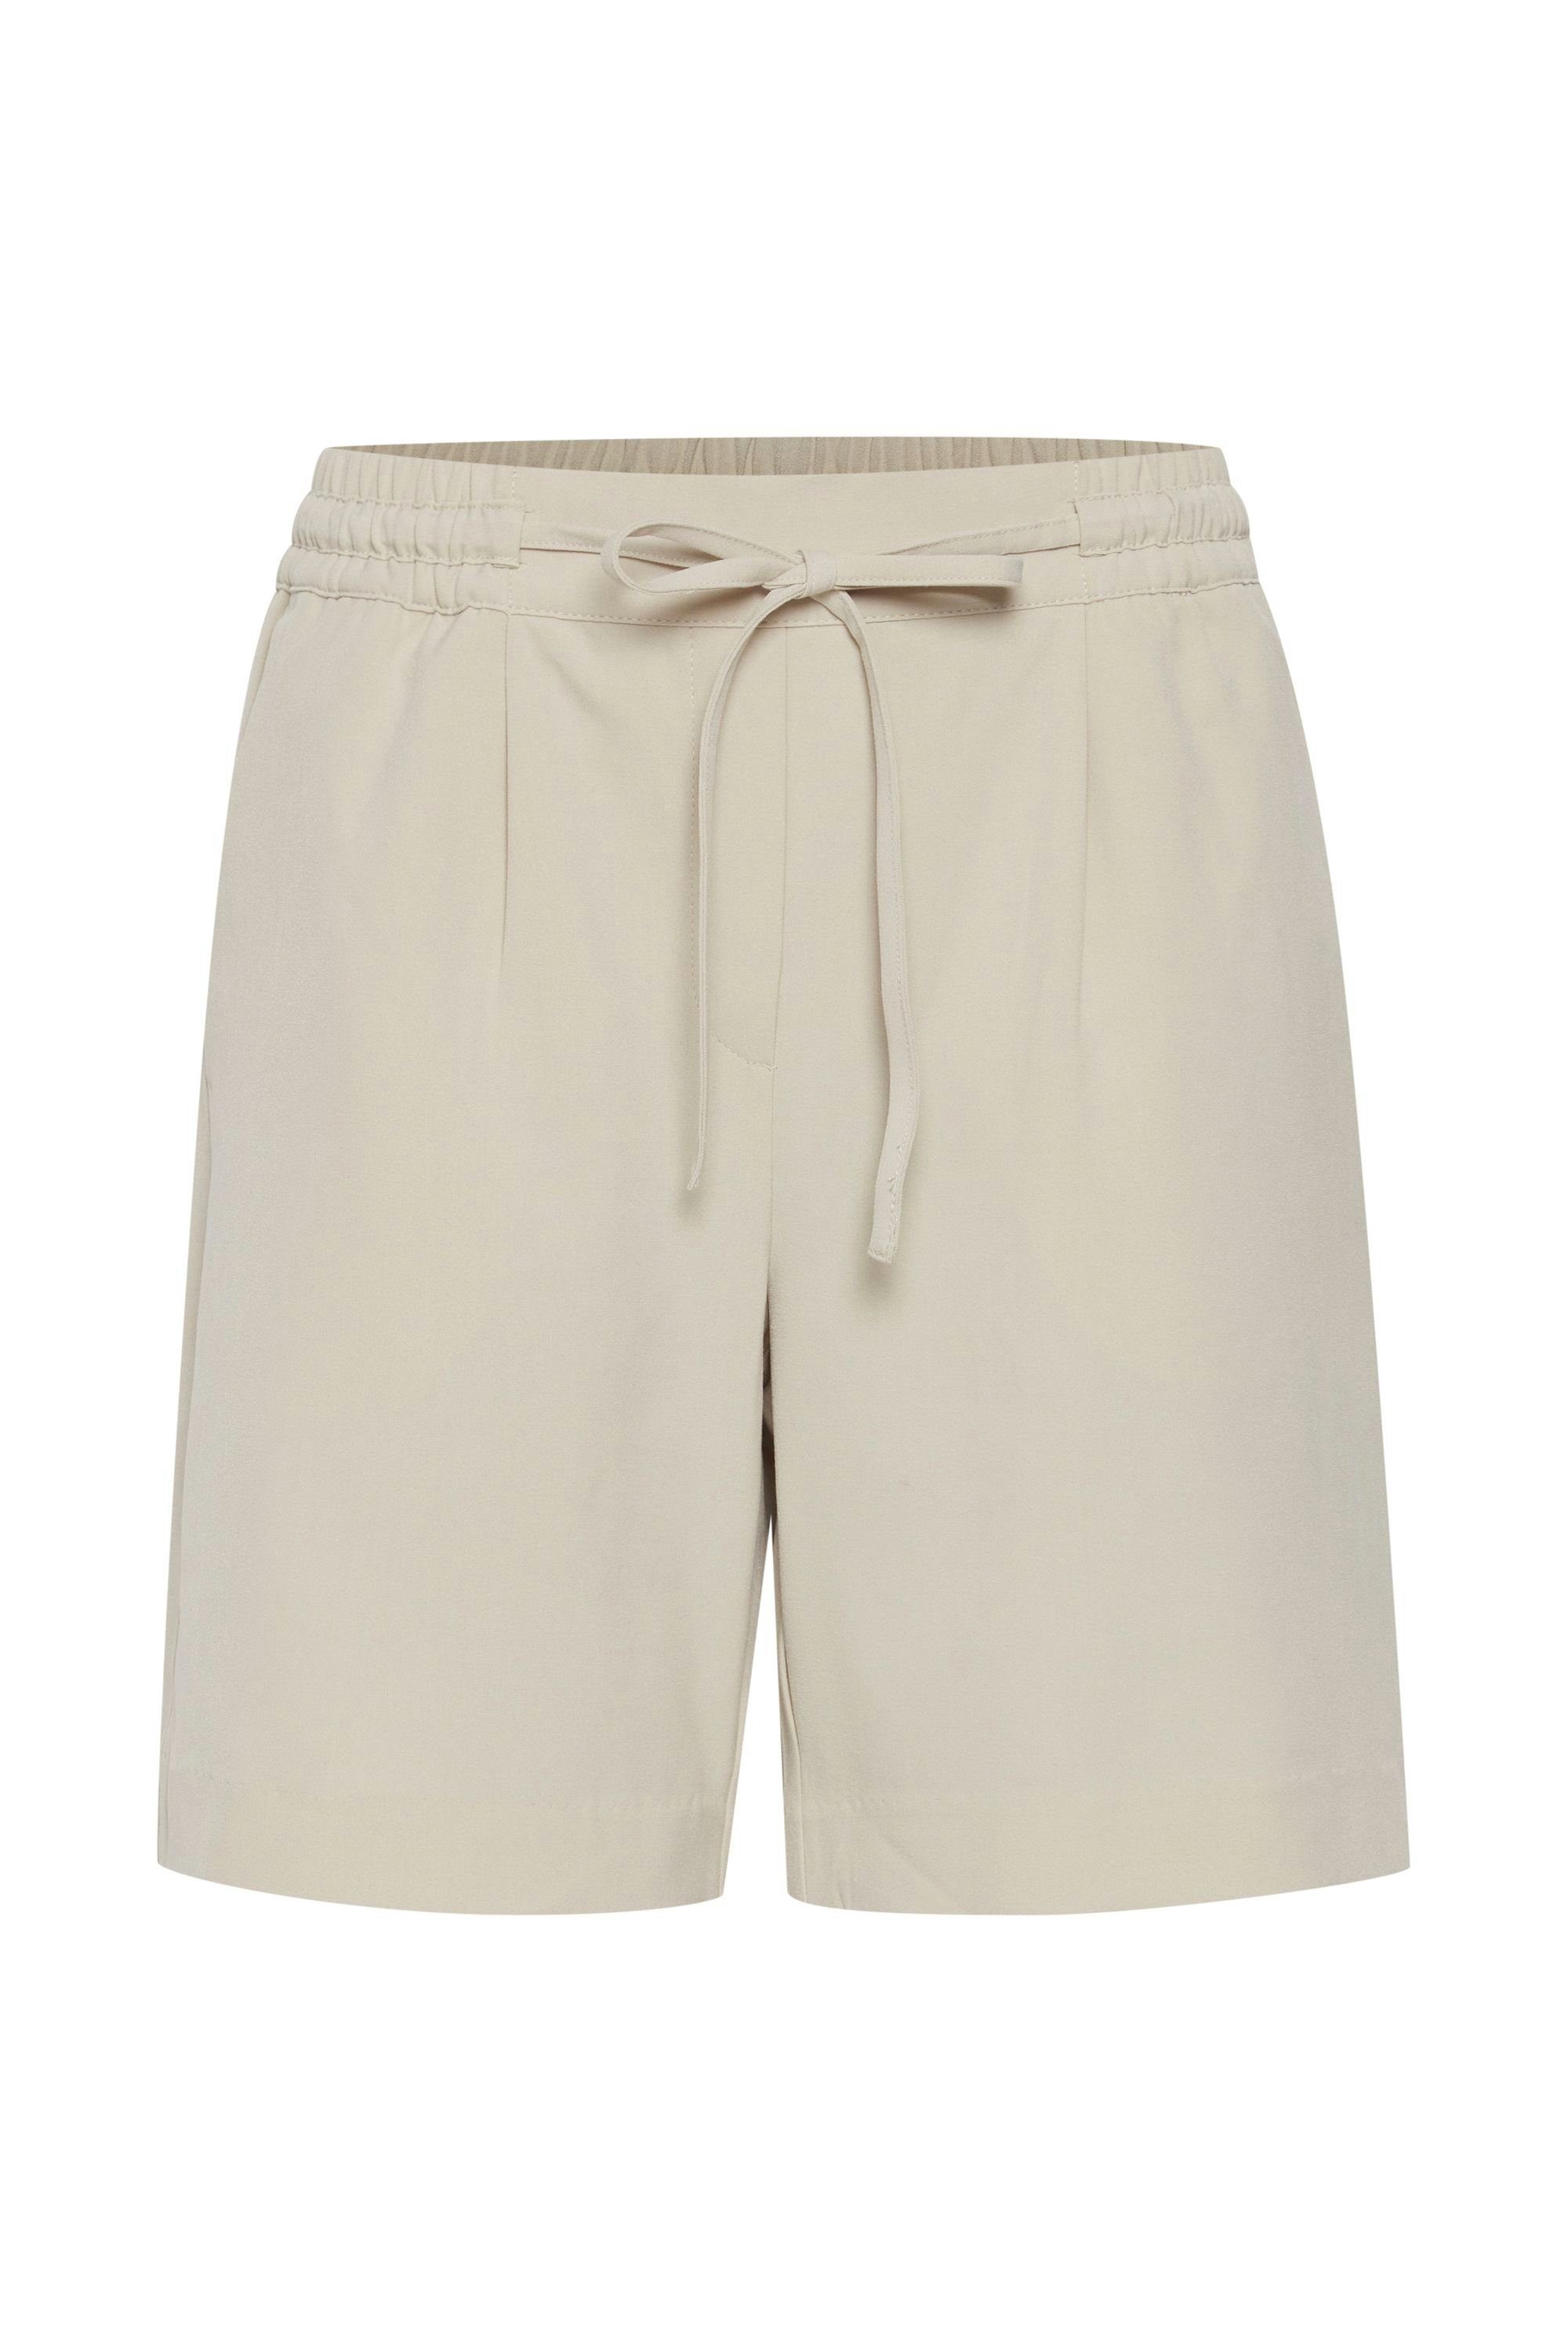 b.young Shorts BYDANTA SHORTS - 20808201 Shorts mit Kordeln Oyster (141107)